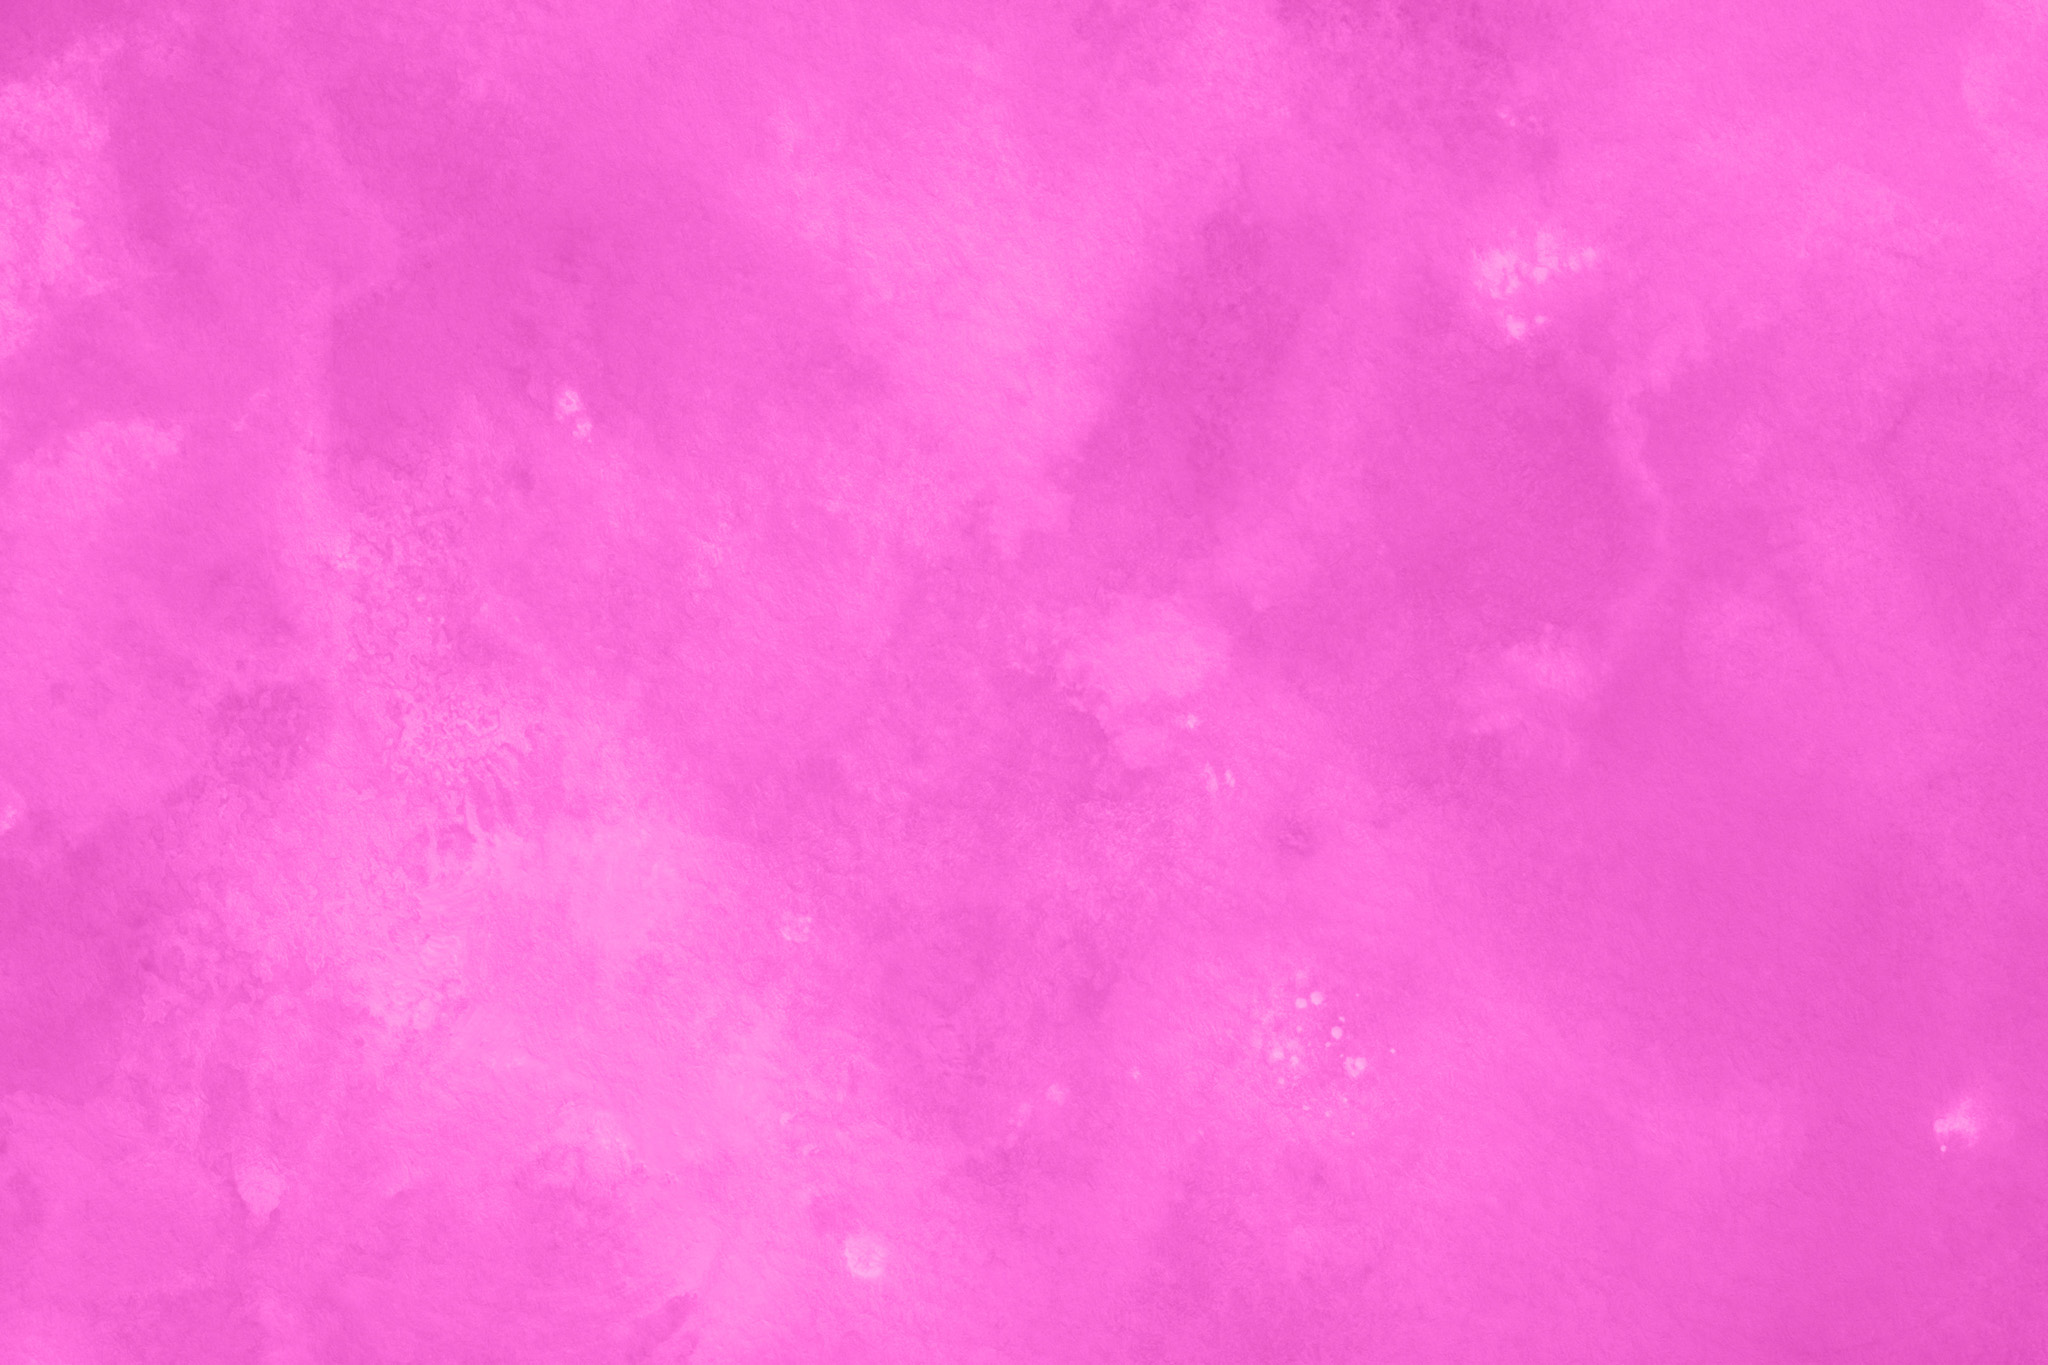 おしゃれなピンクのかっこいい壁紙 の画像素材を無料ダウンロード 1 フリー素材 Beiz Images